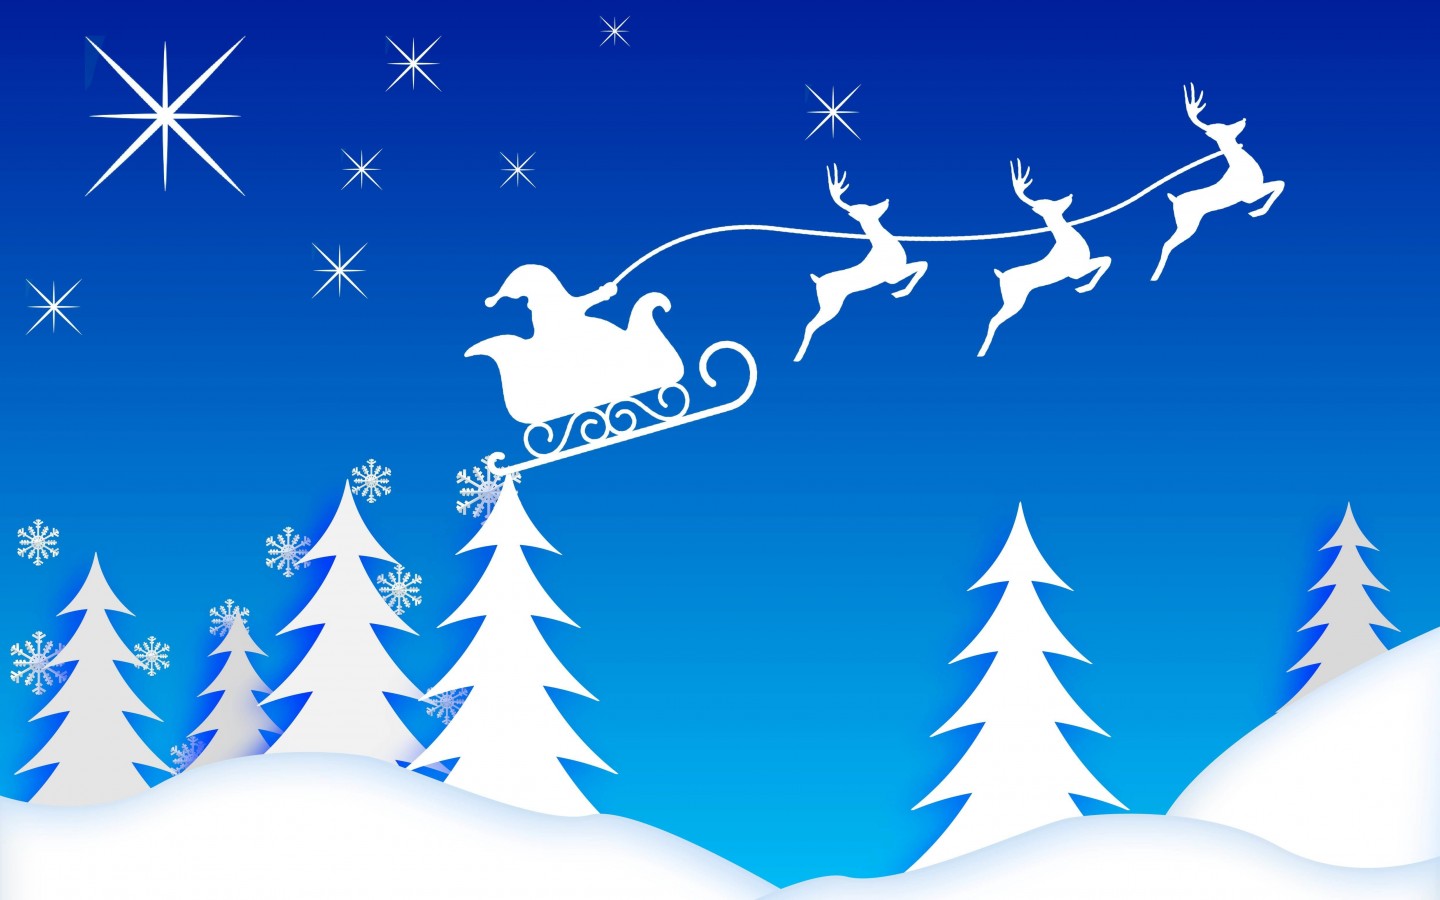 Santa’s Sleigh Illustration Wallpaper for Desktop 1440x900